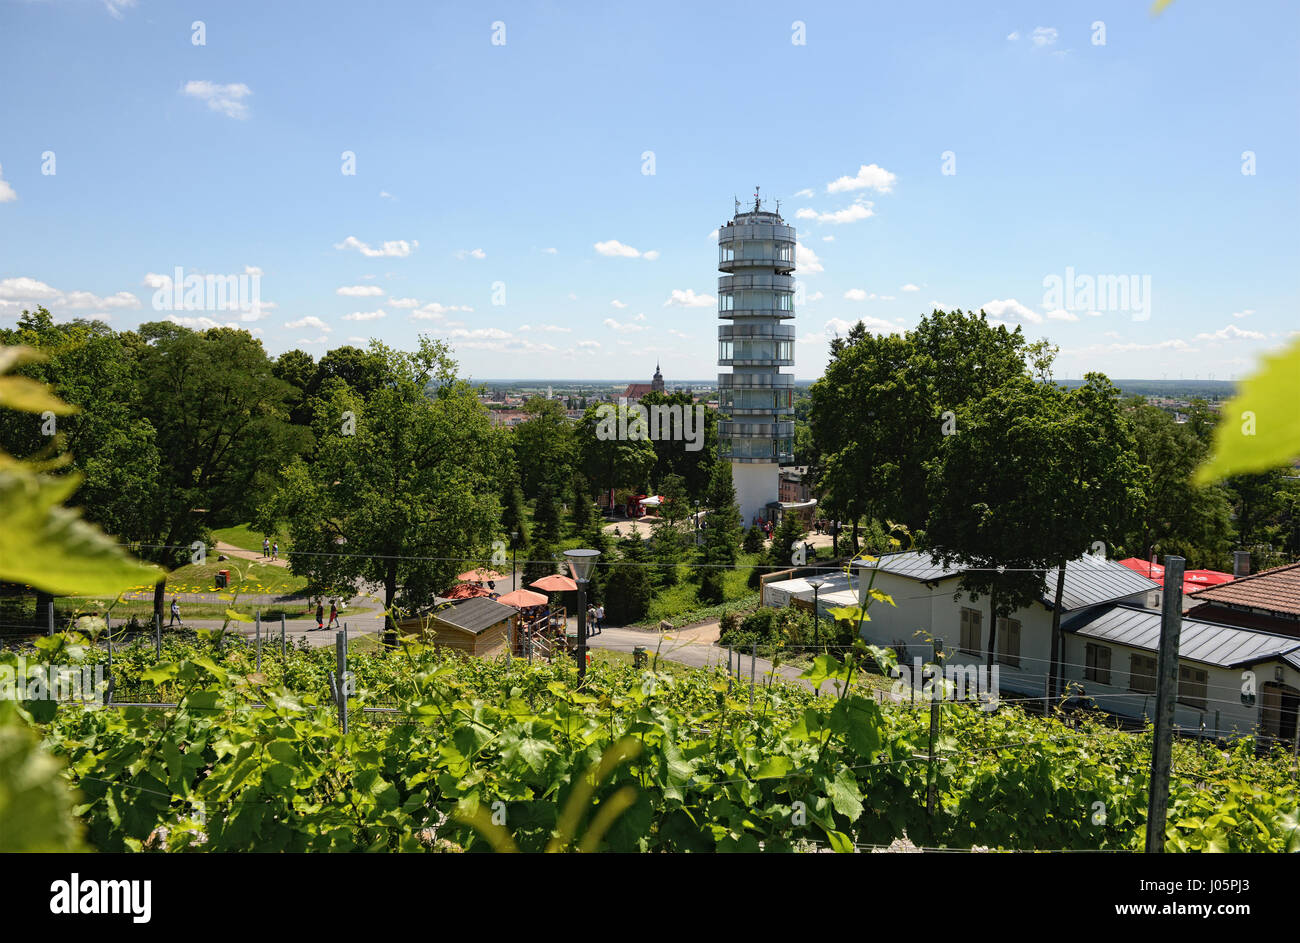 BRANDENBURG AN DER HAVEL, BRANDENBURG/ GERMANY June 28 2015: Cityscape of Brandenburg an der Havel with its tower Friedensturm at Marienberg hill. Peo Stock Photo